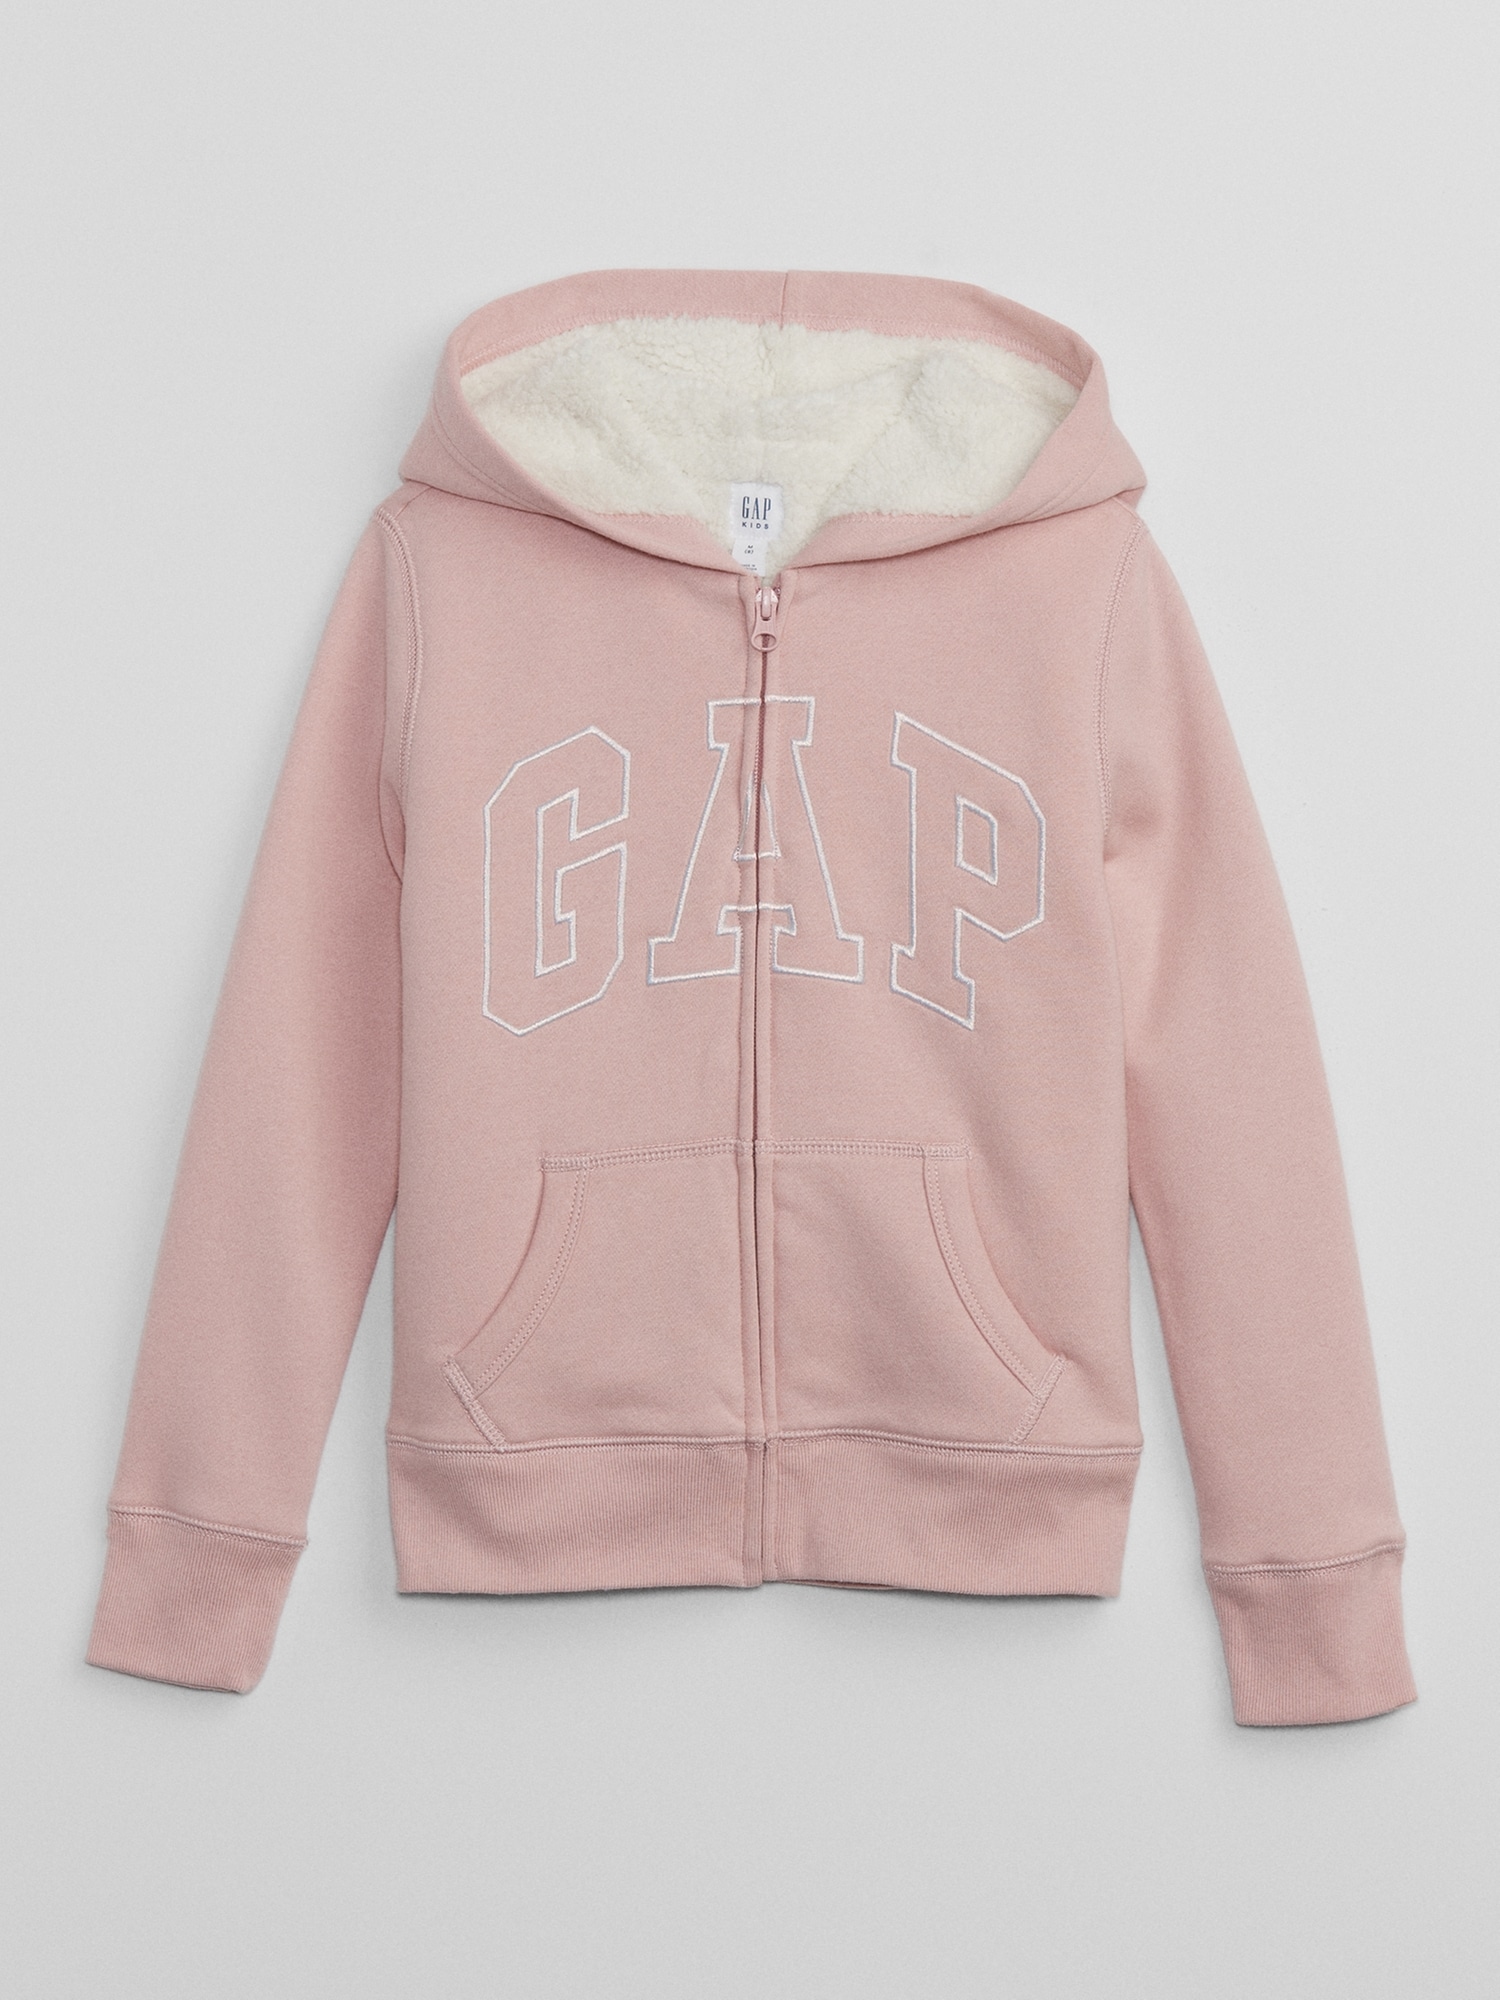 Gap公式オンラインストア | GAPロゴ ボア ジップアップ パーカー (キッズ)